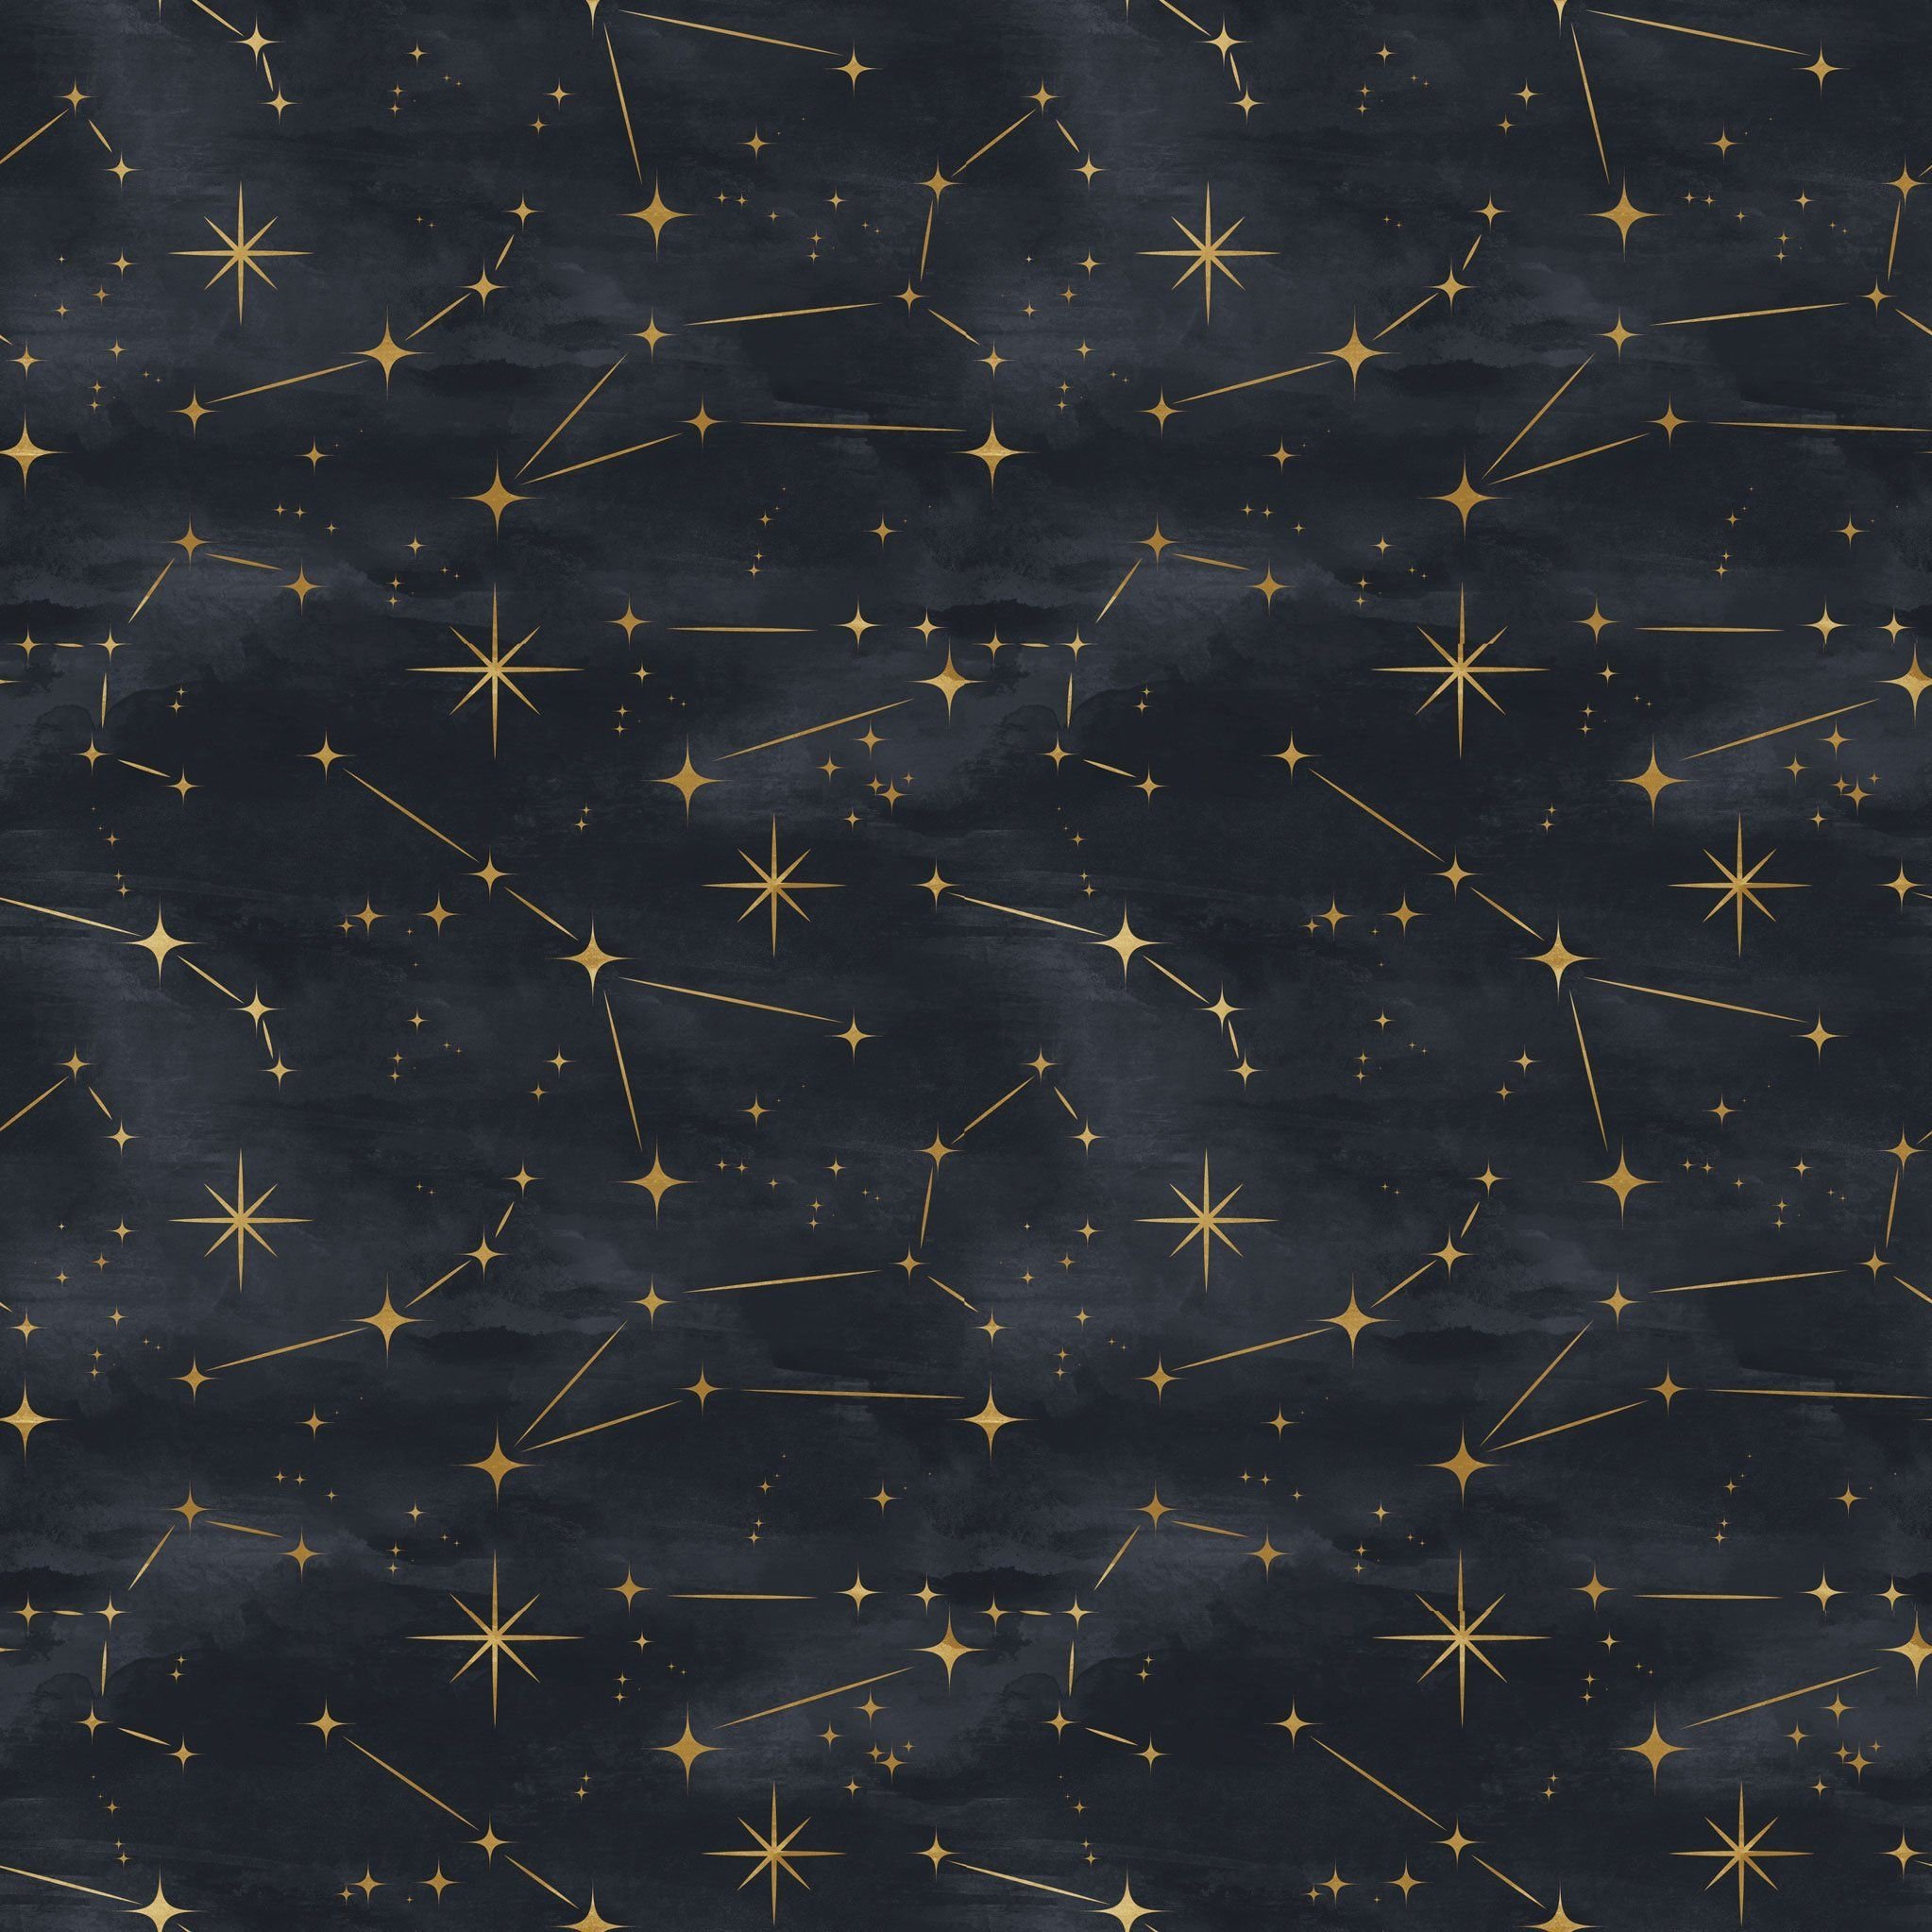 Созвездие 55. Созвездия. Созвездия на небе. Звездное небо созвездия. Ночное небо с созвездиями.